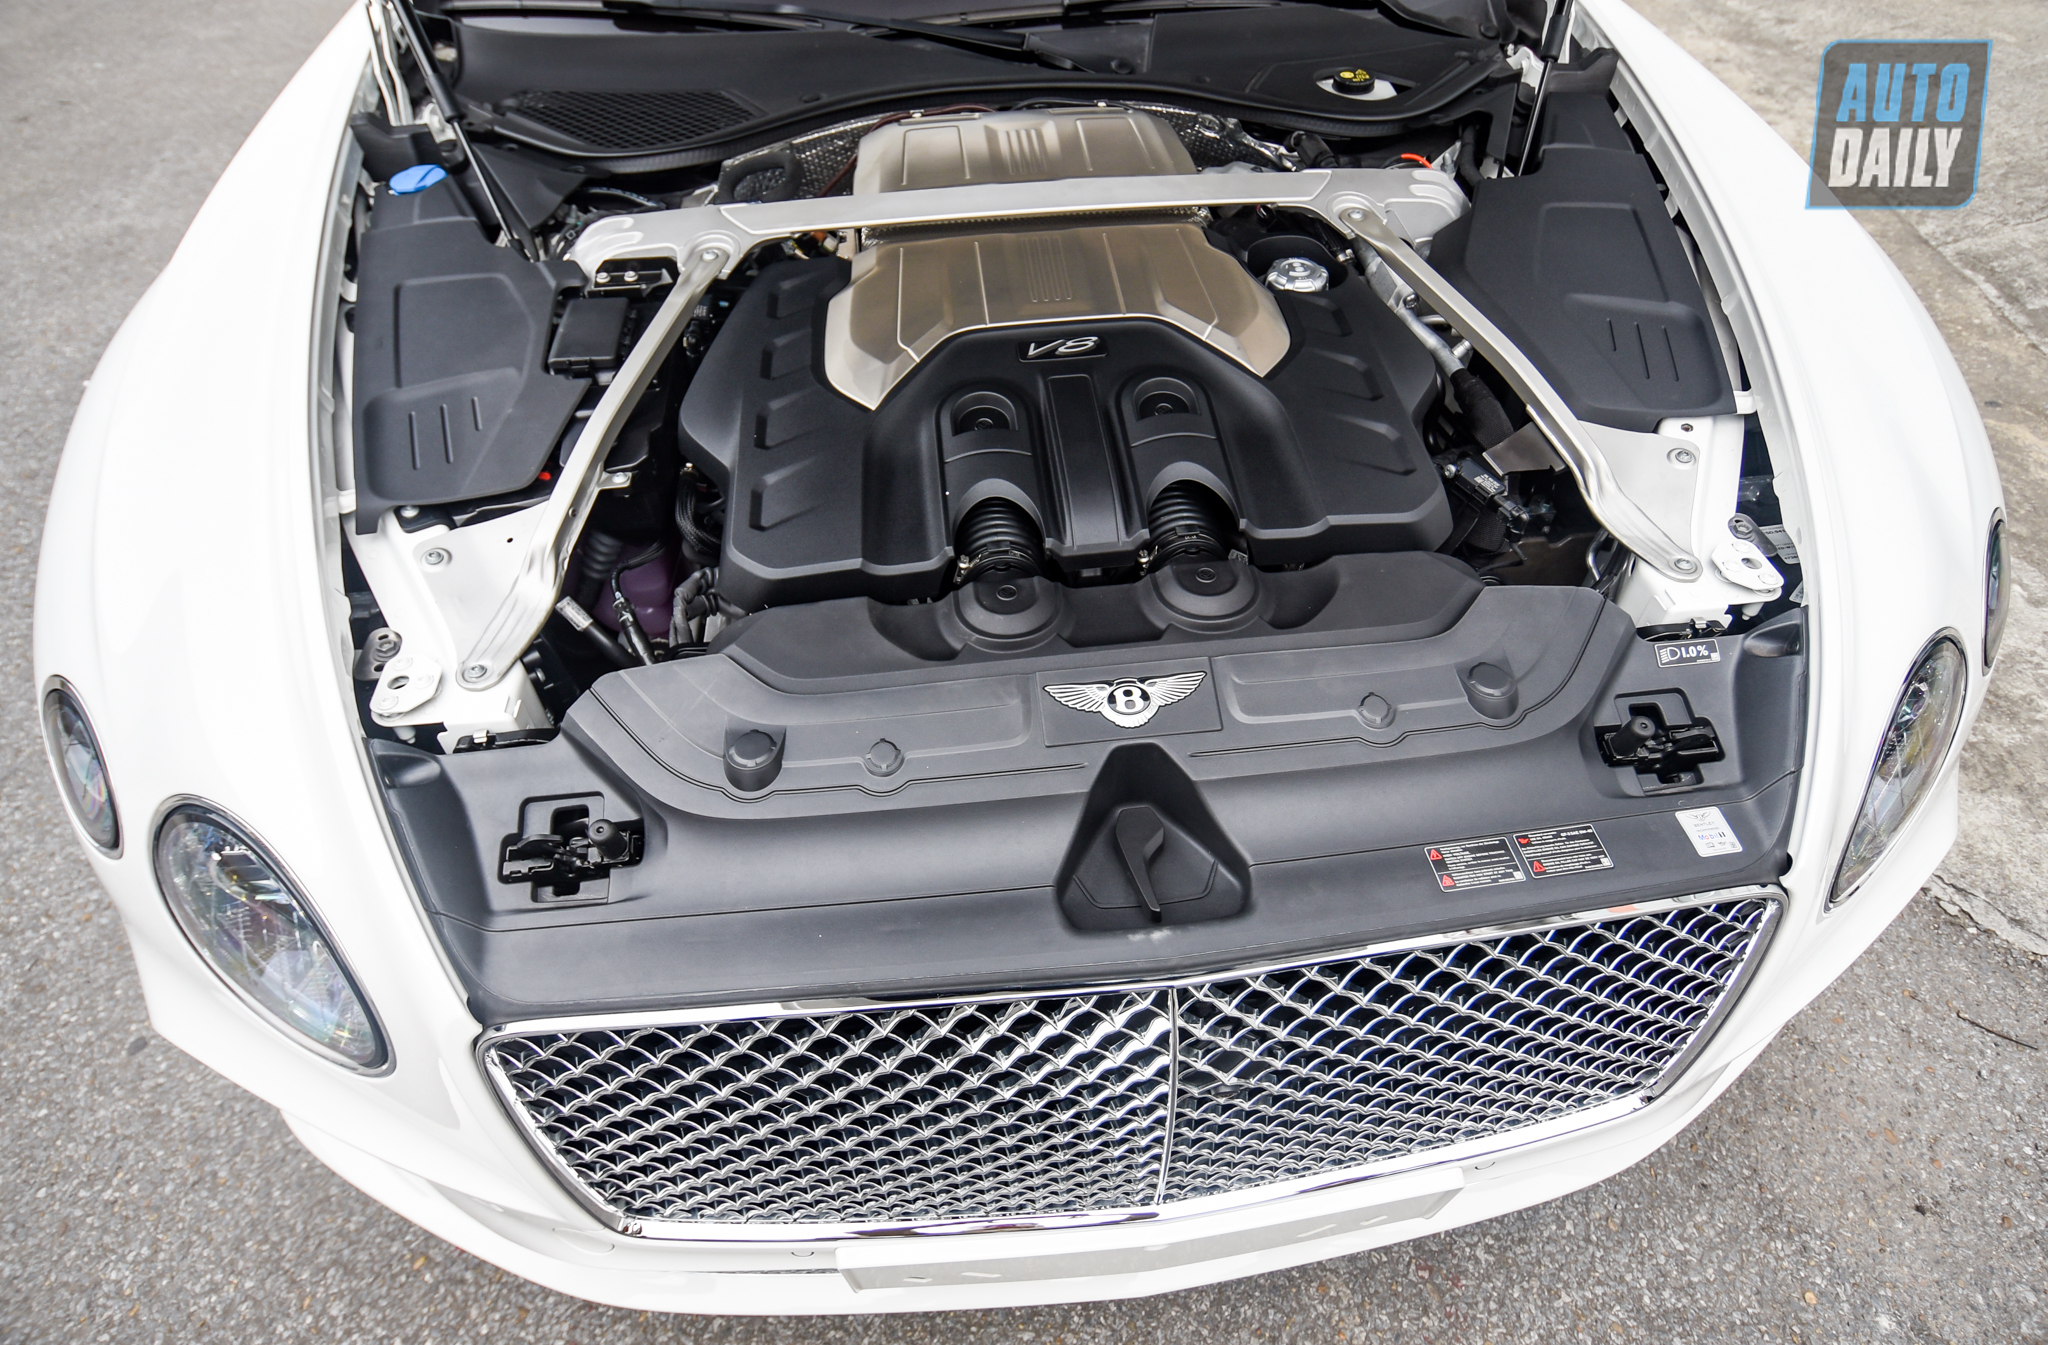 Tất tần tật về Bentley Continental GT V8 2020 thứ 2 tại Việt Nam dsc-4853.jpg